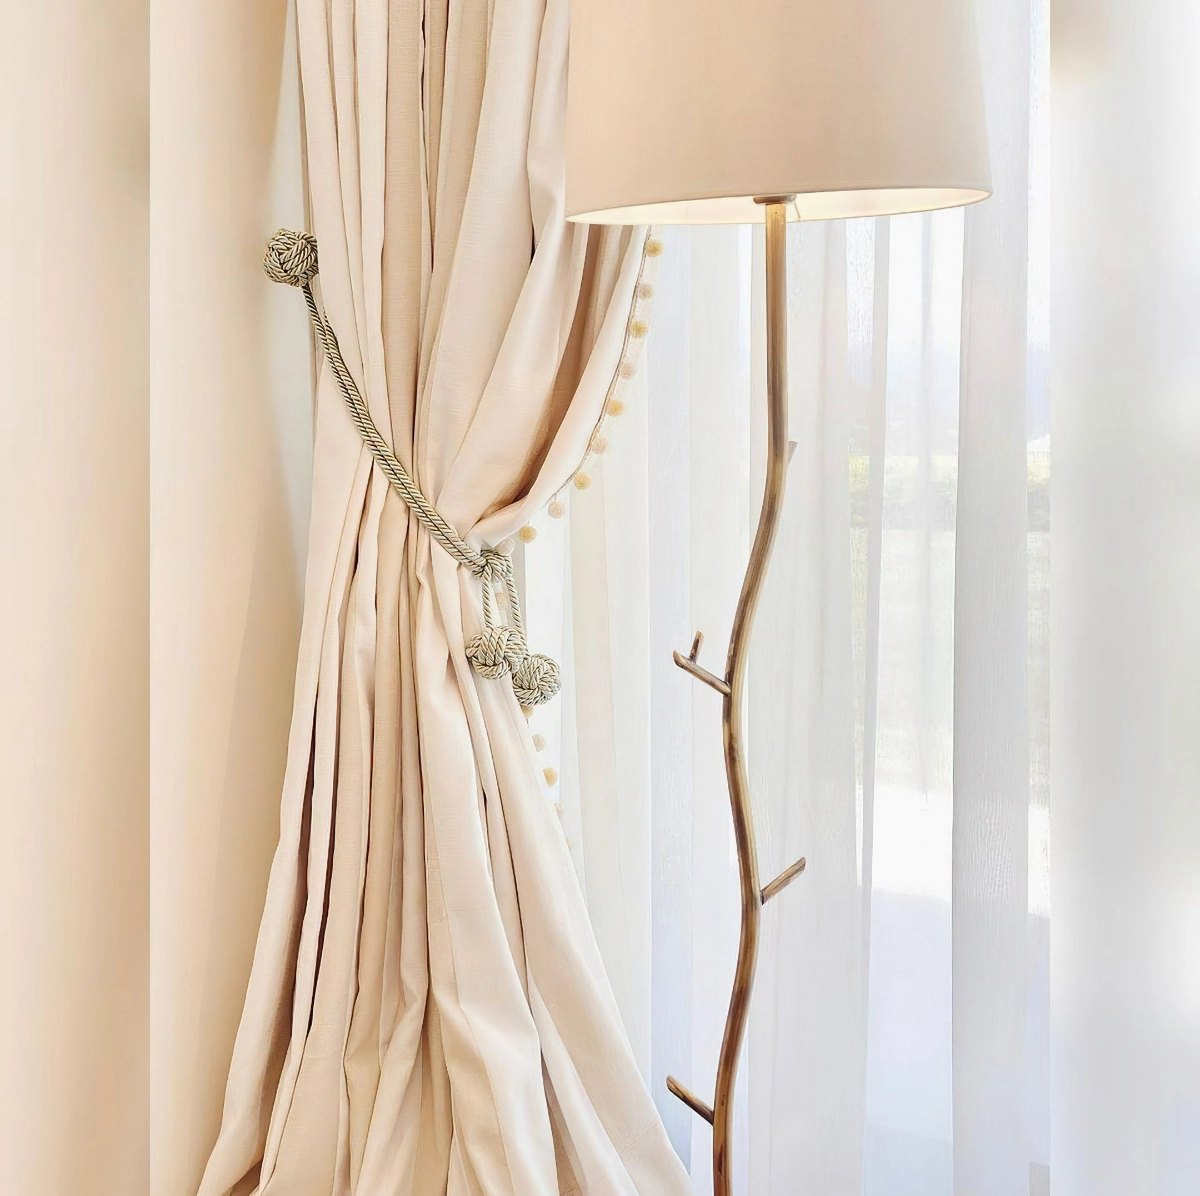 leinen gardinen in beige vorhange aus natuerlichem stoff bellemaisonperde